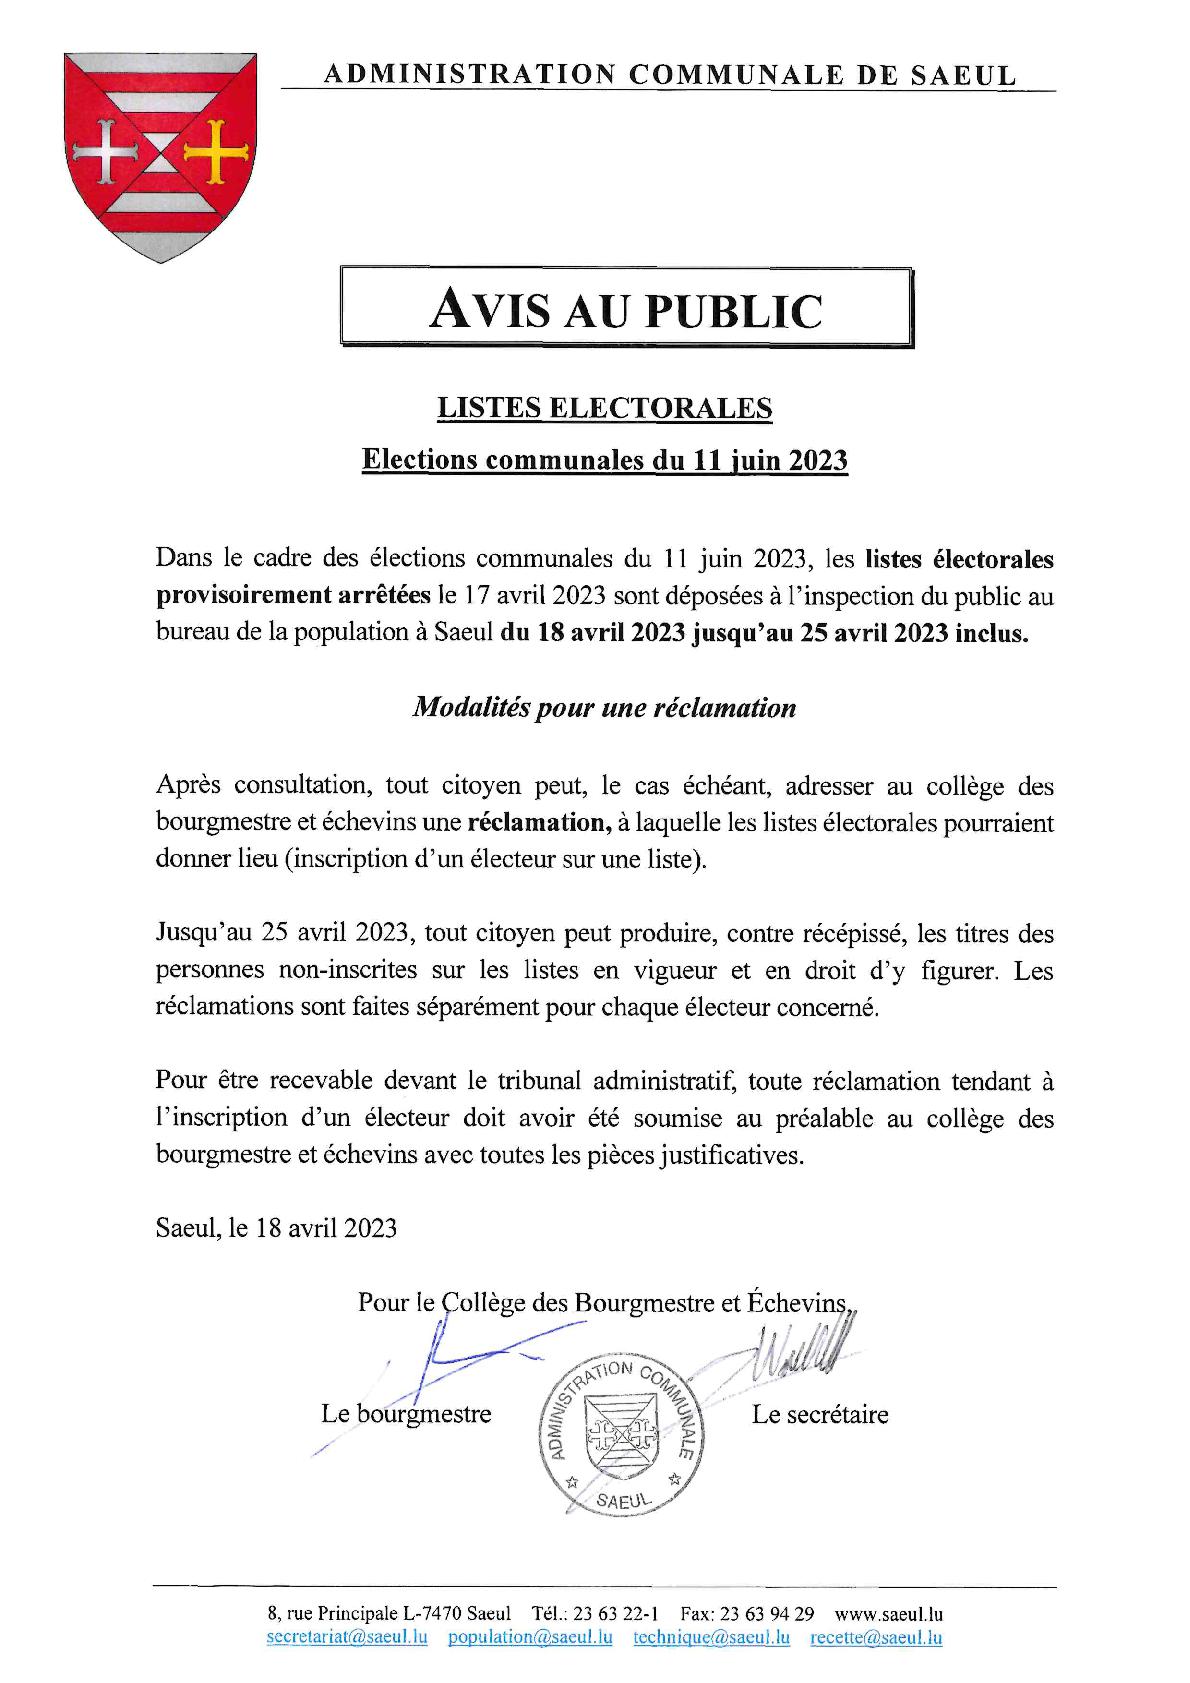 AVIS AU PUBLIC | Listes électorales provisoirement arrêtées